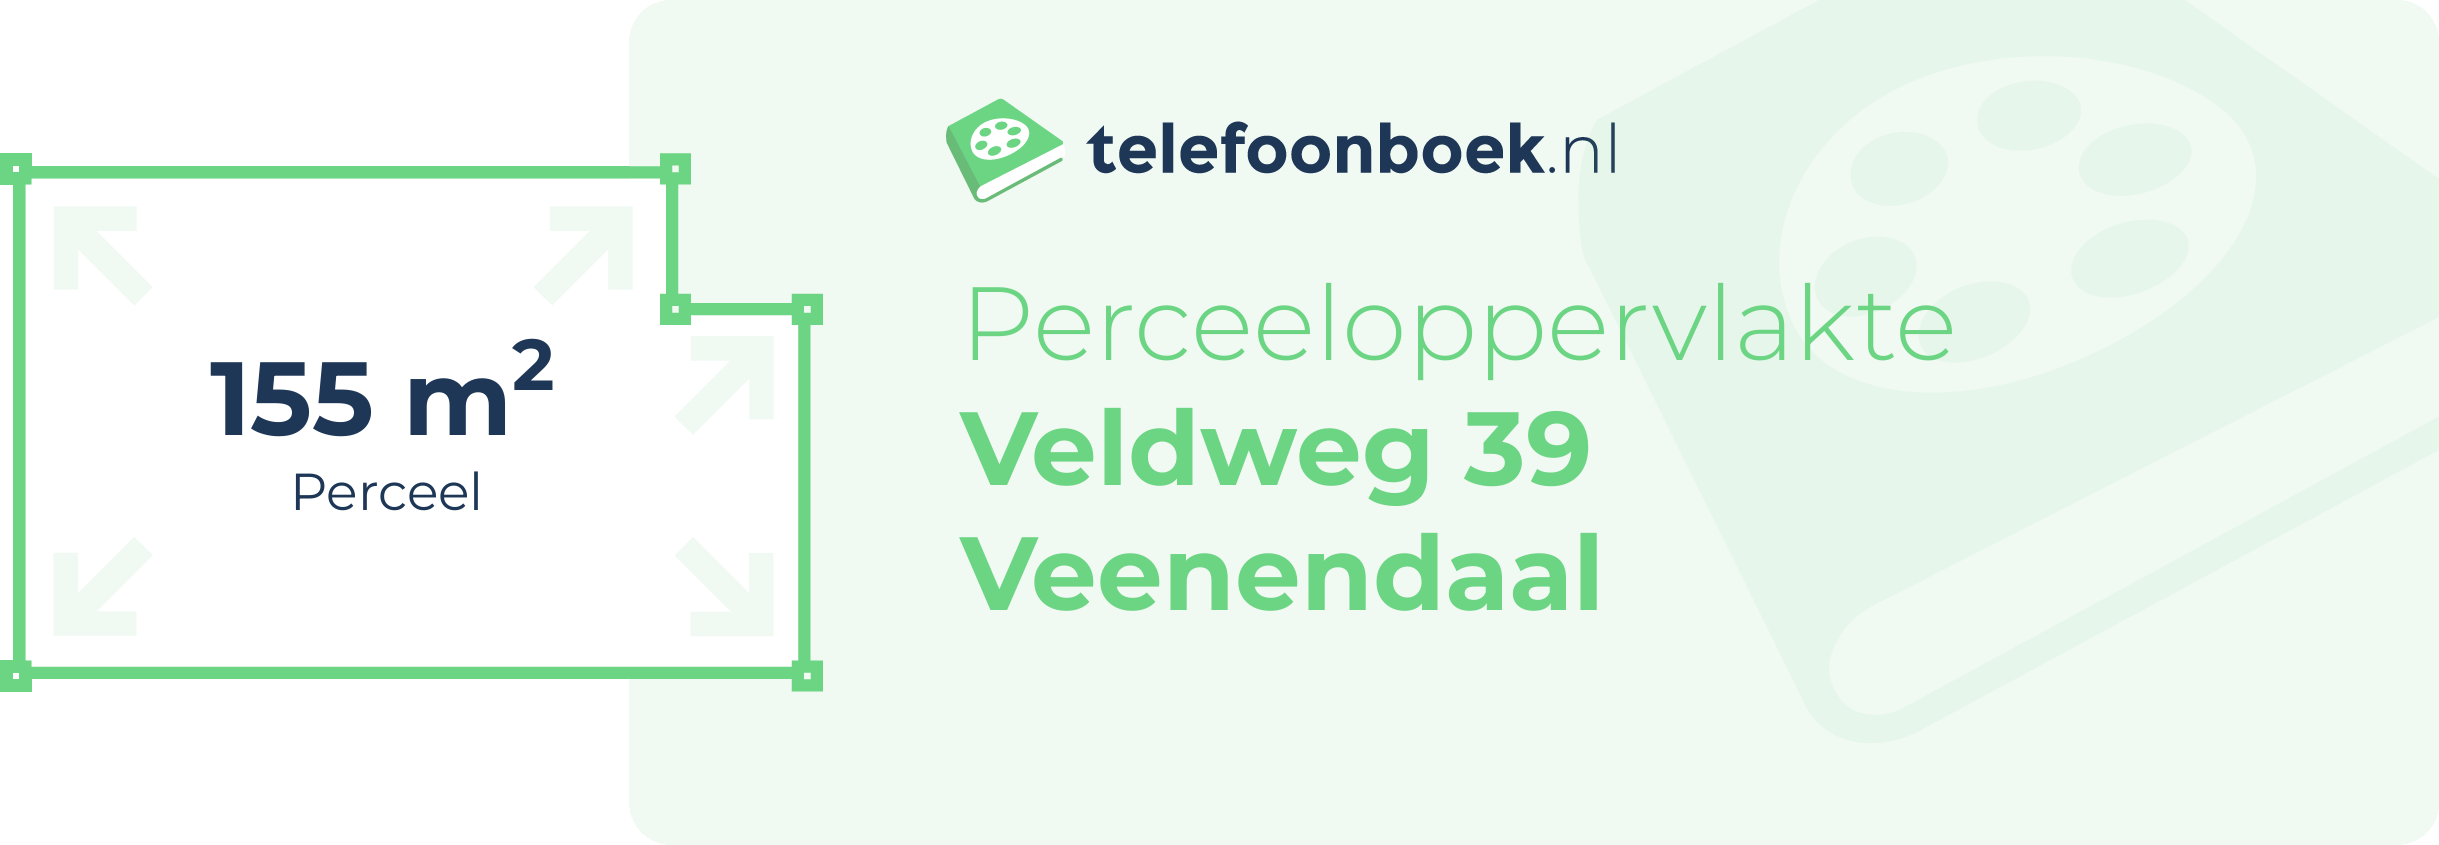 Perceeloppervlakte Veldweg 39 Veenendaal